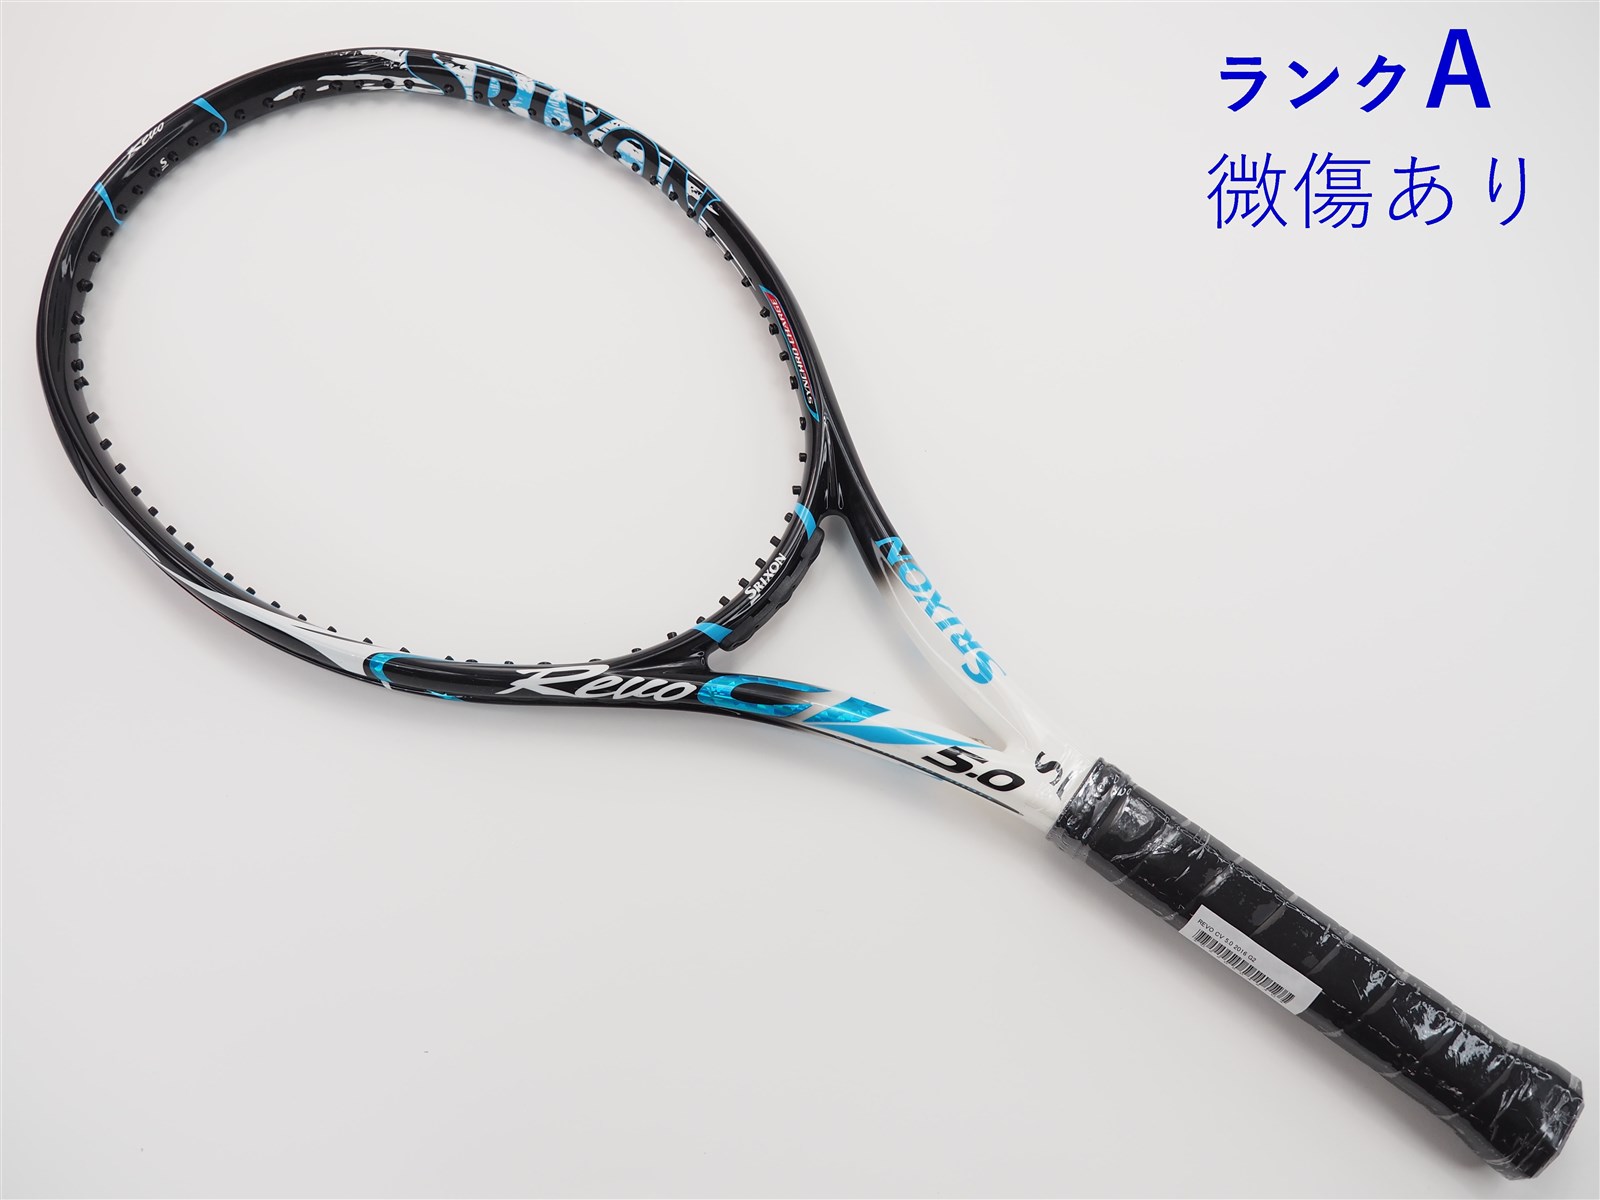 テニスラケット スリクソン レヴォ CV 5.0 OS 2018年モデル (G2)SRIXON REVO CV 5.0 OS 2018